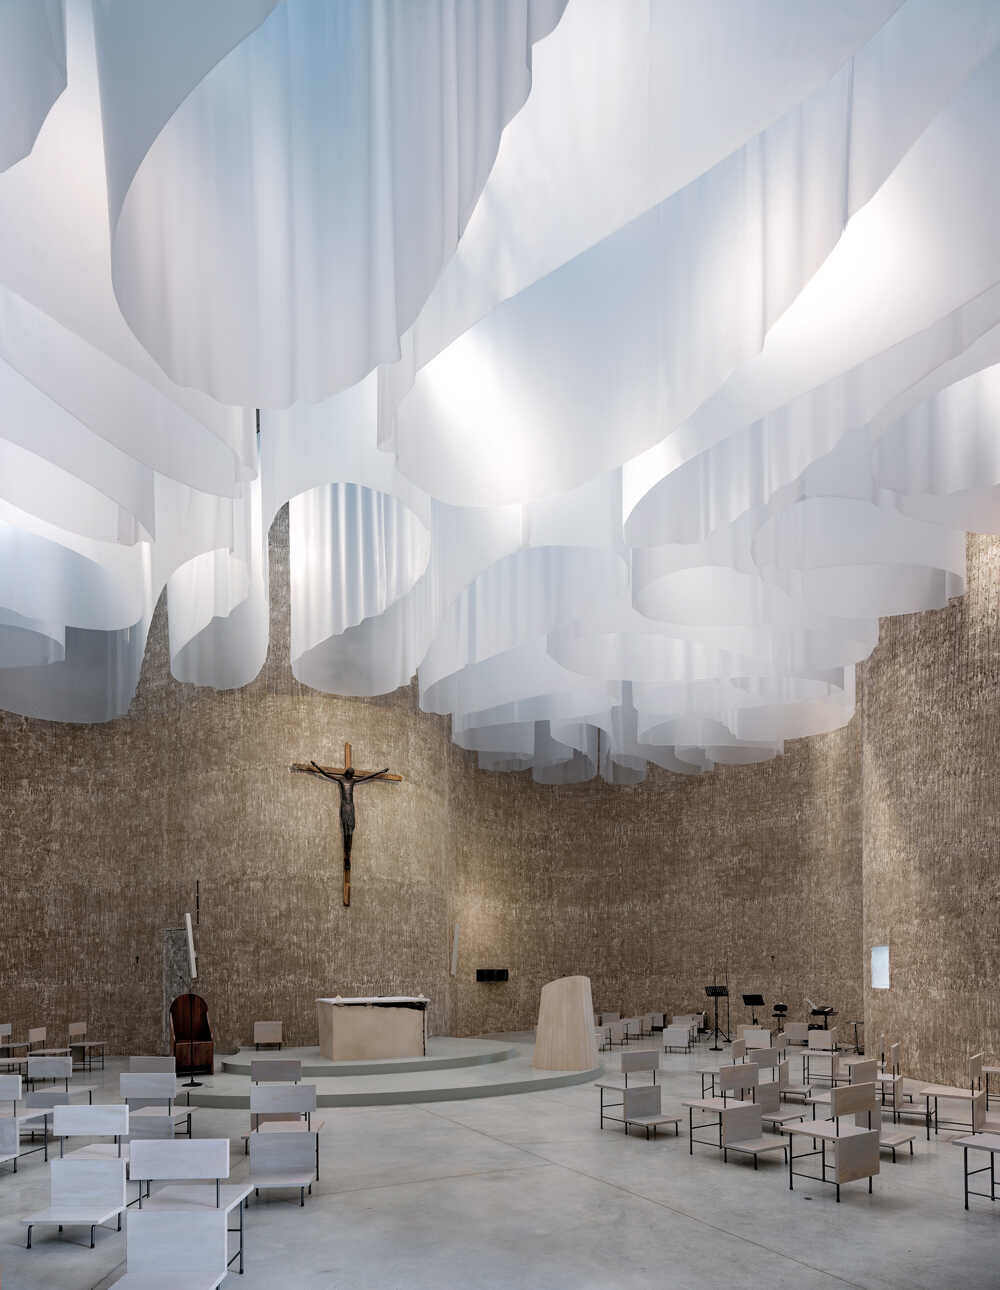 מגזין מקו ועד תרבות / מיזם דיגיטלי ללא צרכי רווח עיצוב מעורר השראה <br><br>מסורת ואדריכלות מודרנית<br><br> כנסייה בפארק הלאומי Pollino ב- Calibria, דרום איטליה  